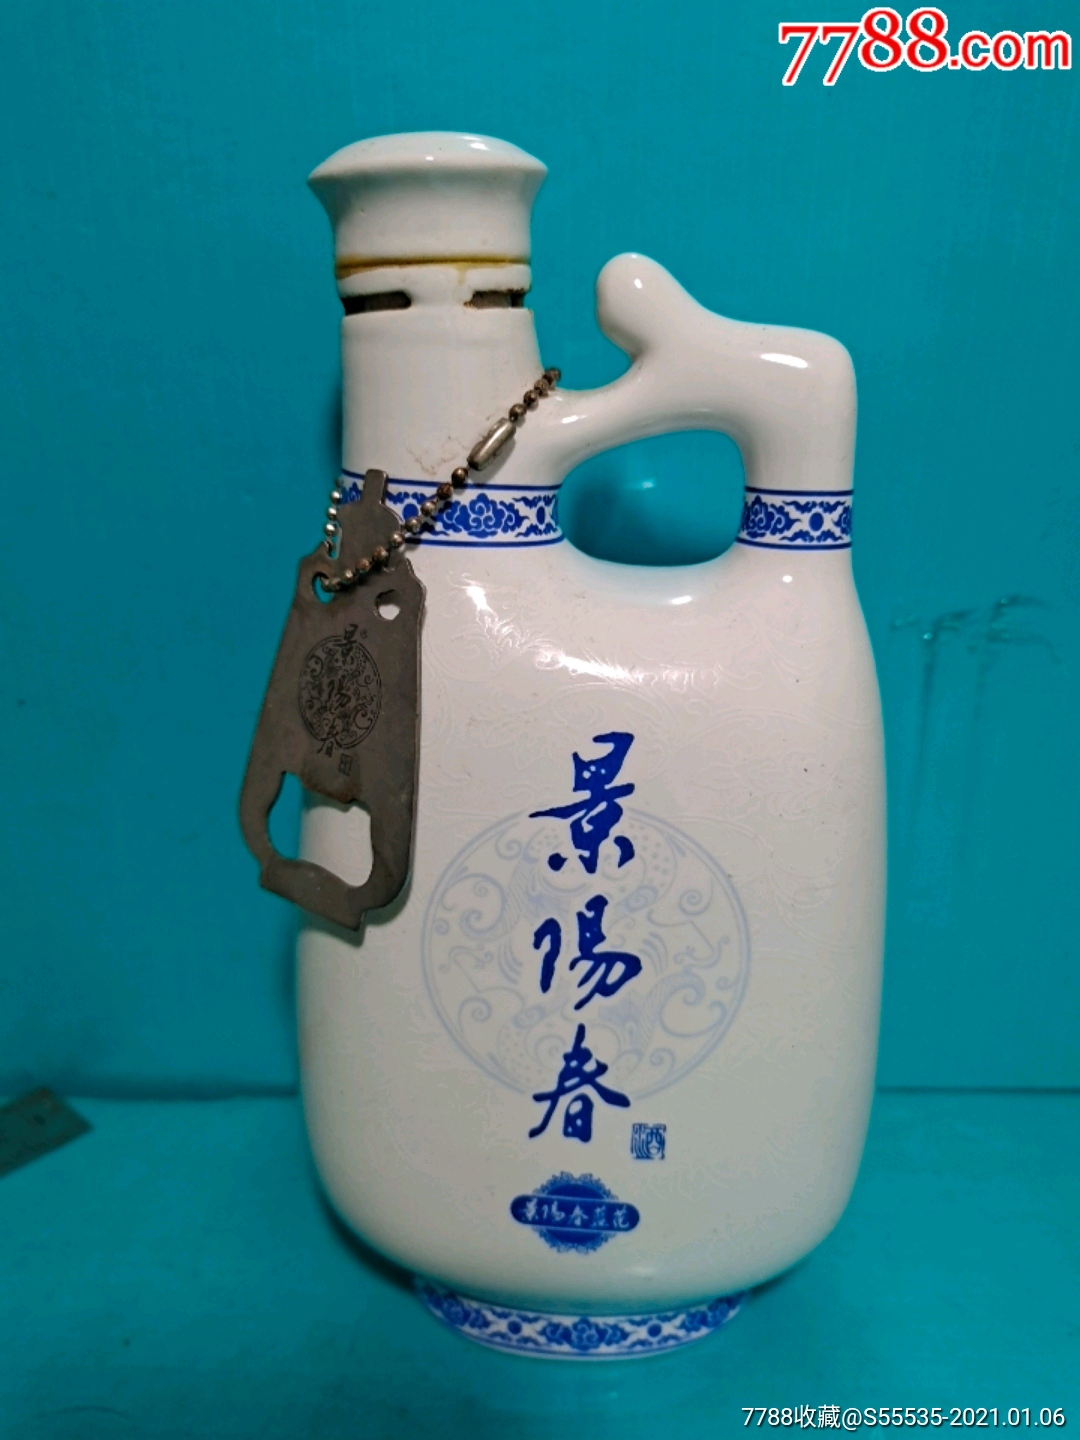 景阳春38度白瓷瓶图片